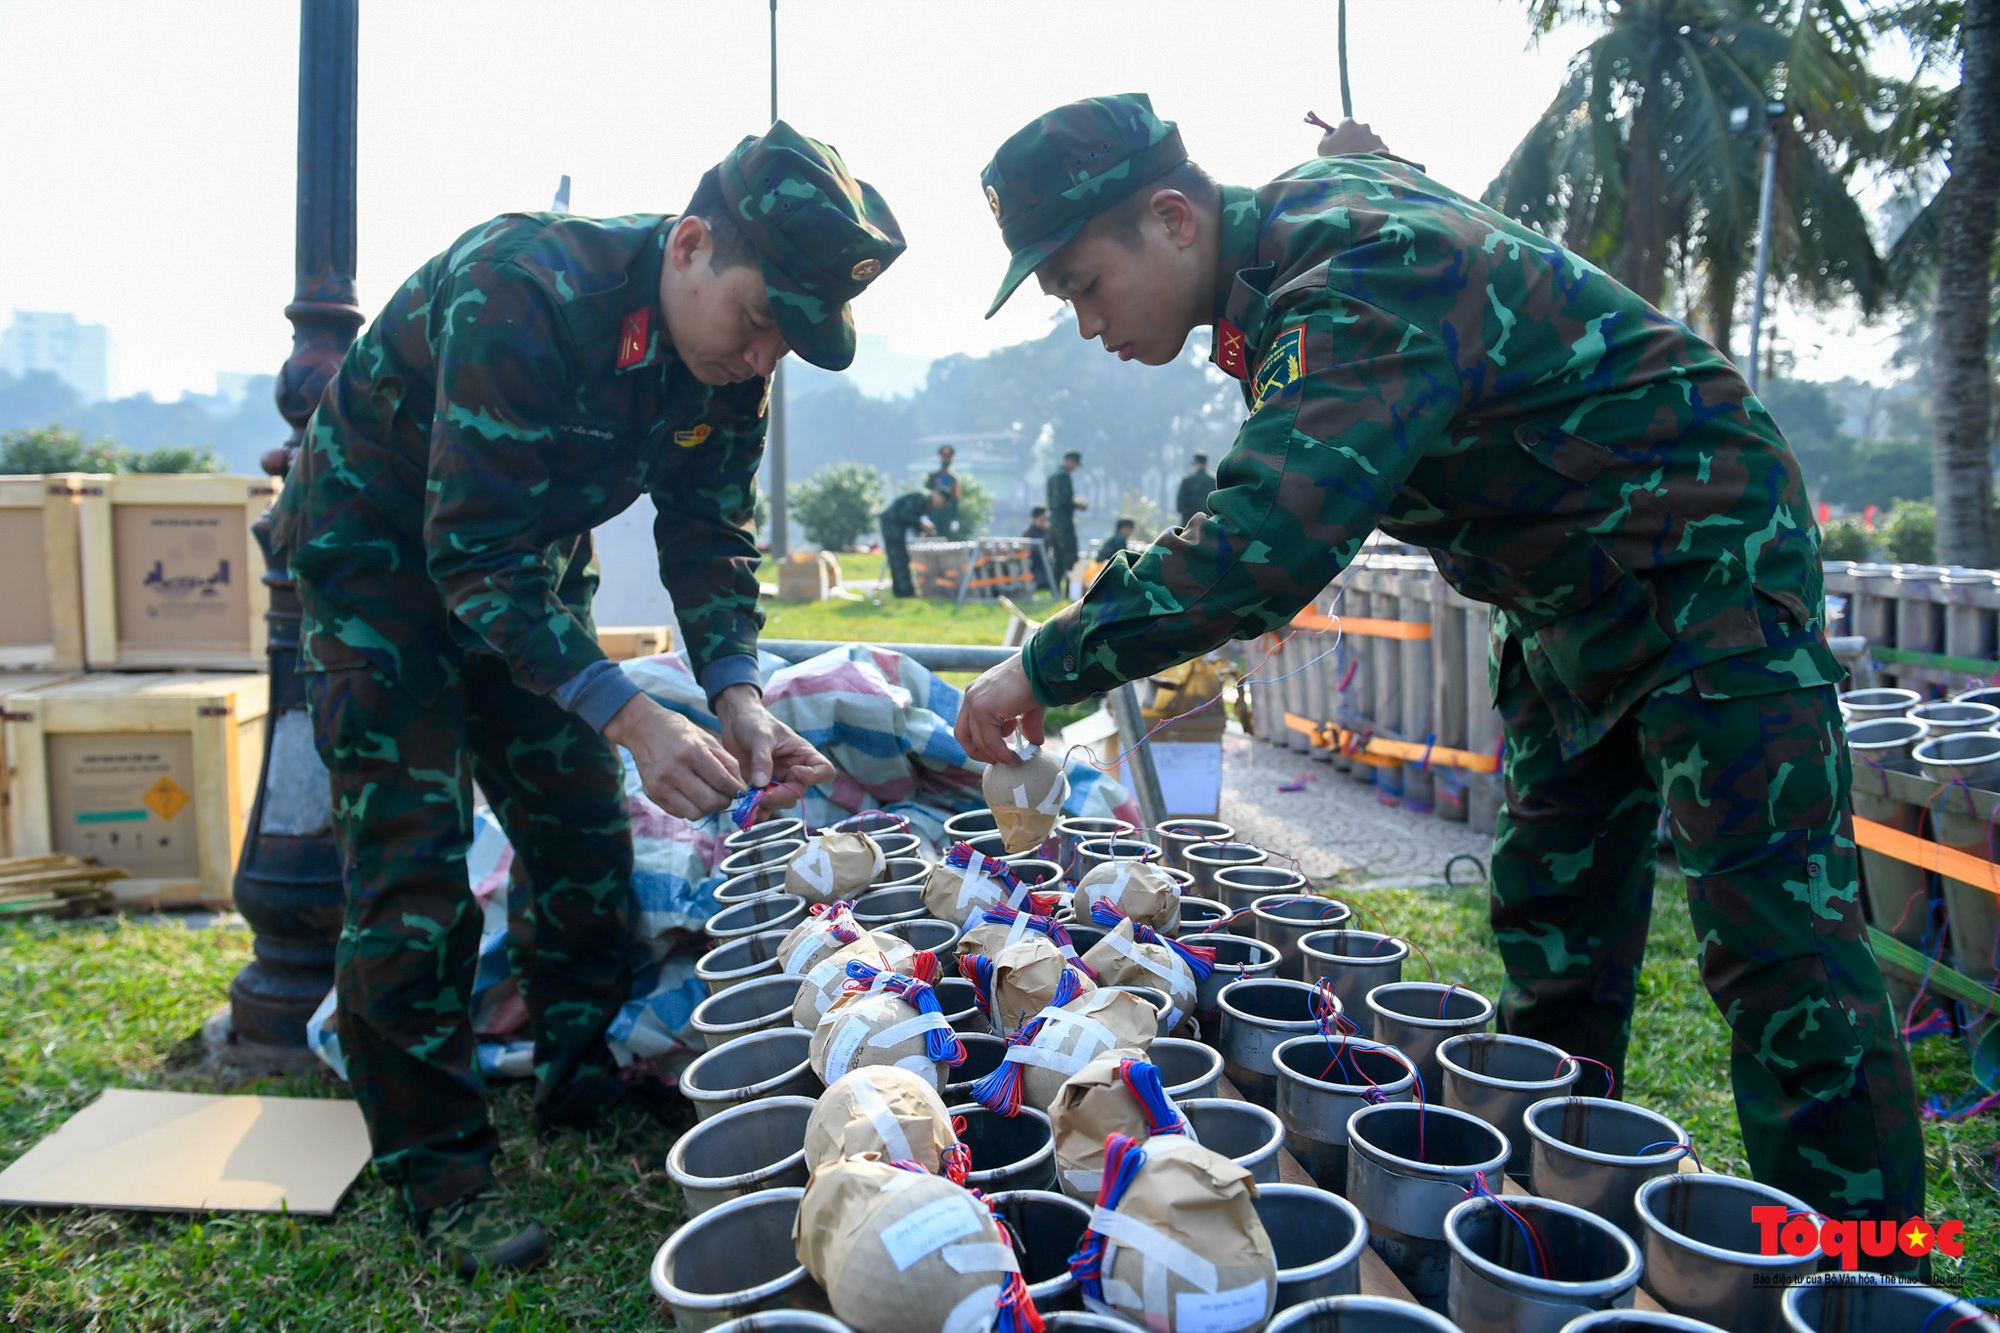 Hà Nội: Cận cảnh lắp đặt trận địa pháo hoa phục vụ đêm Giao thừa - Ảnh 5.